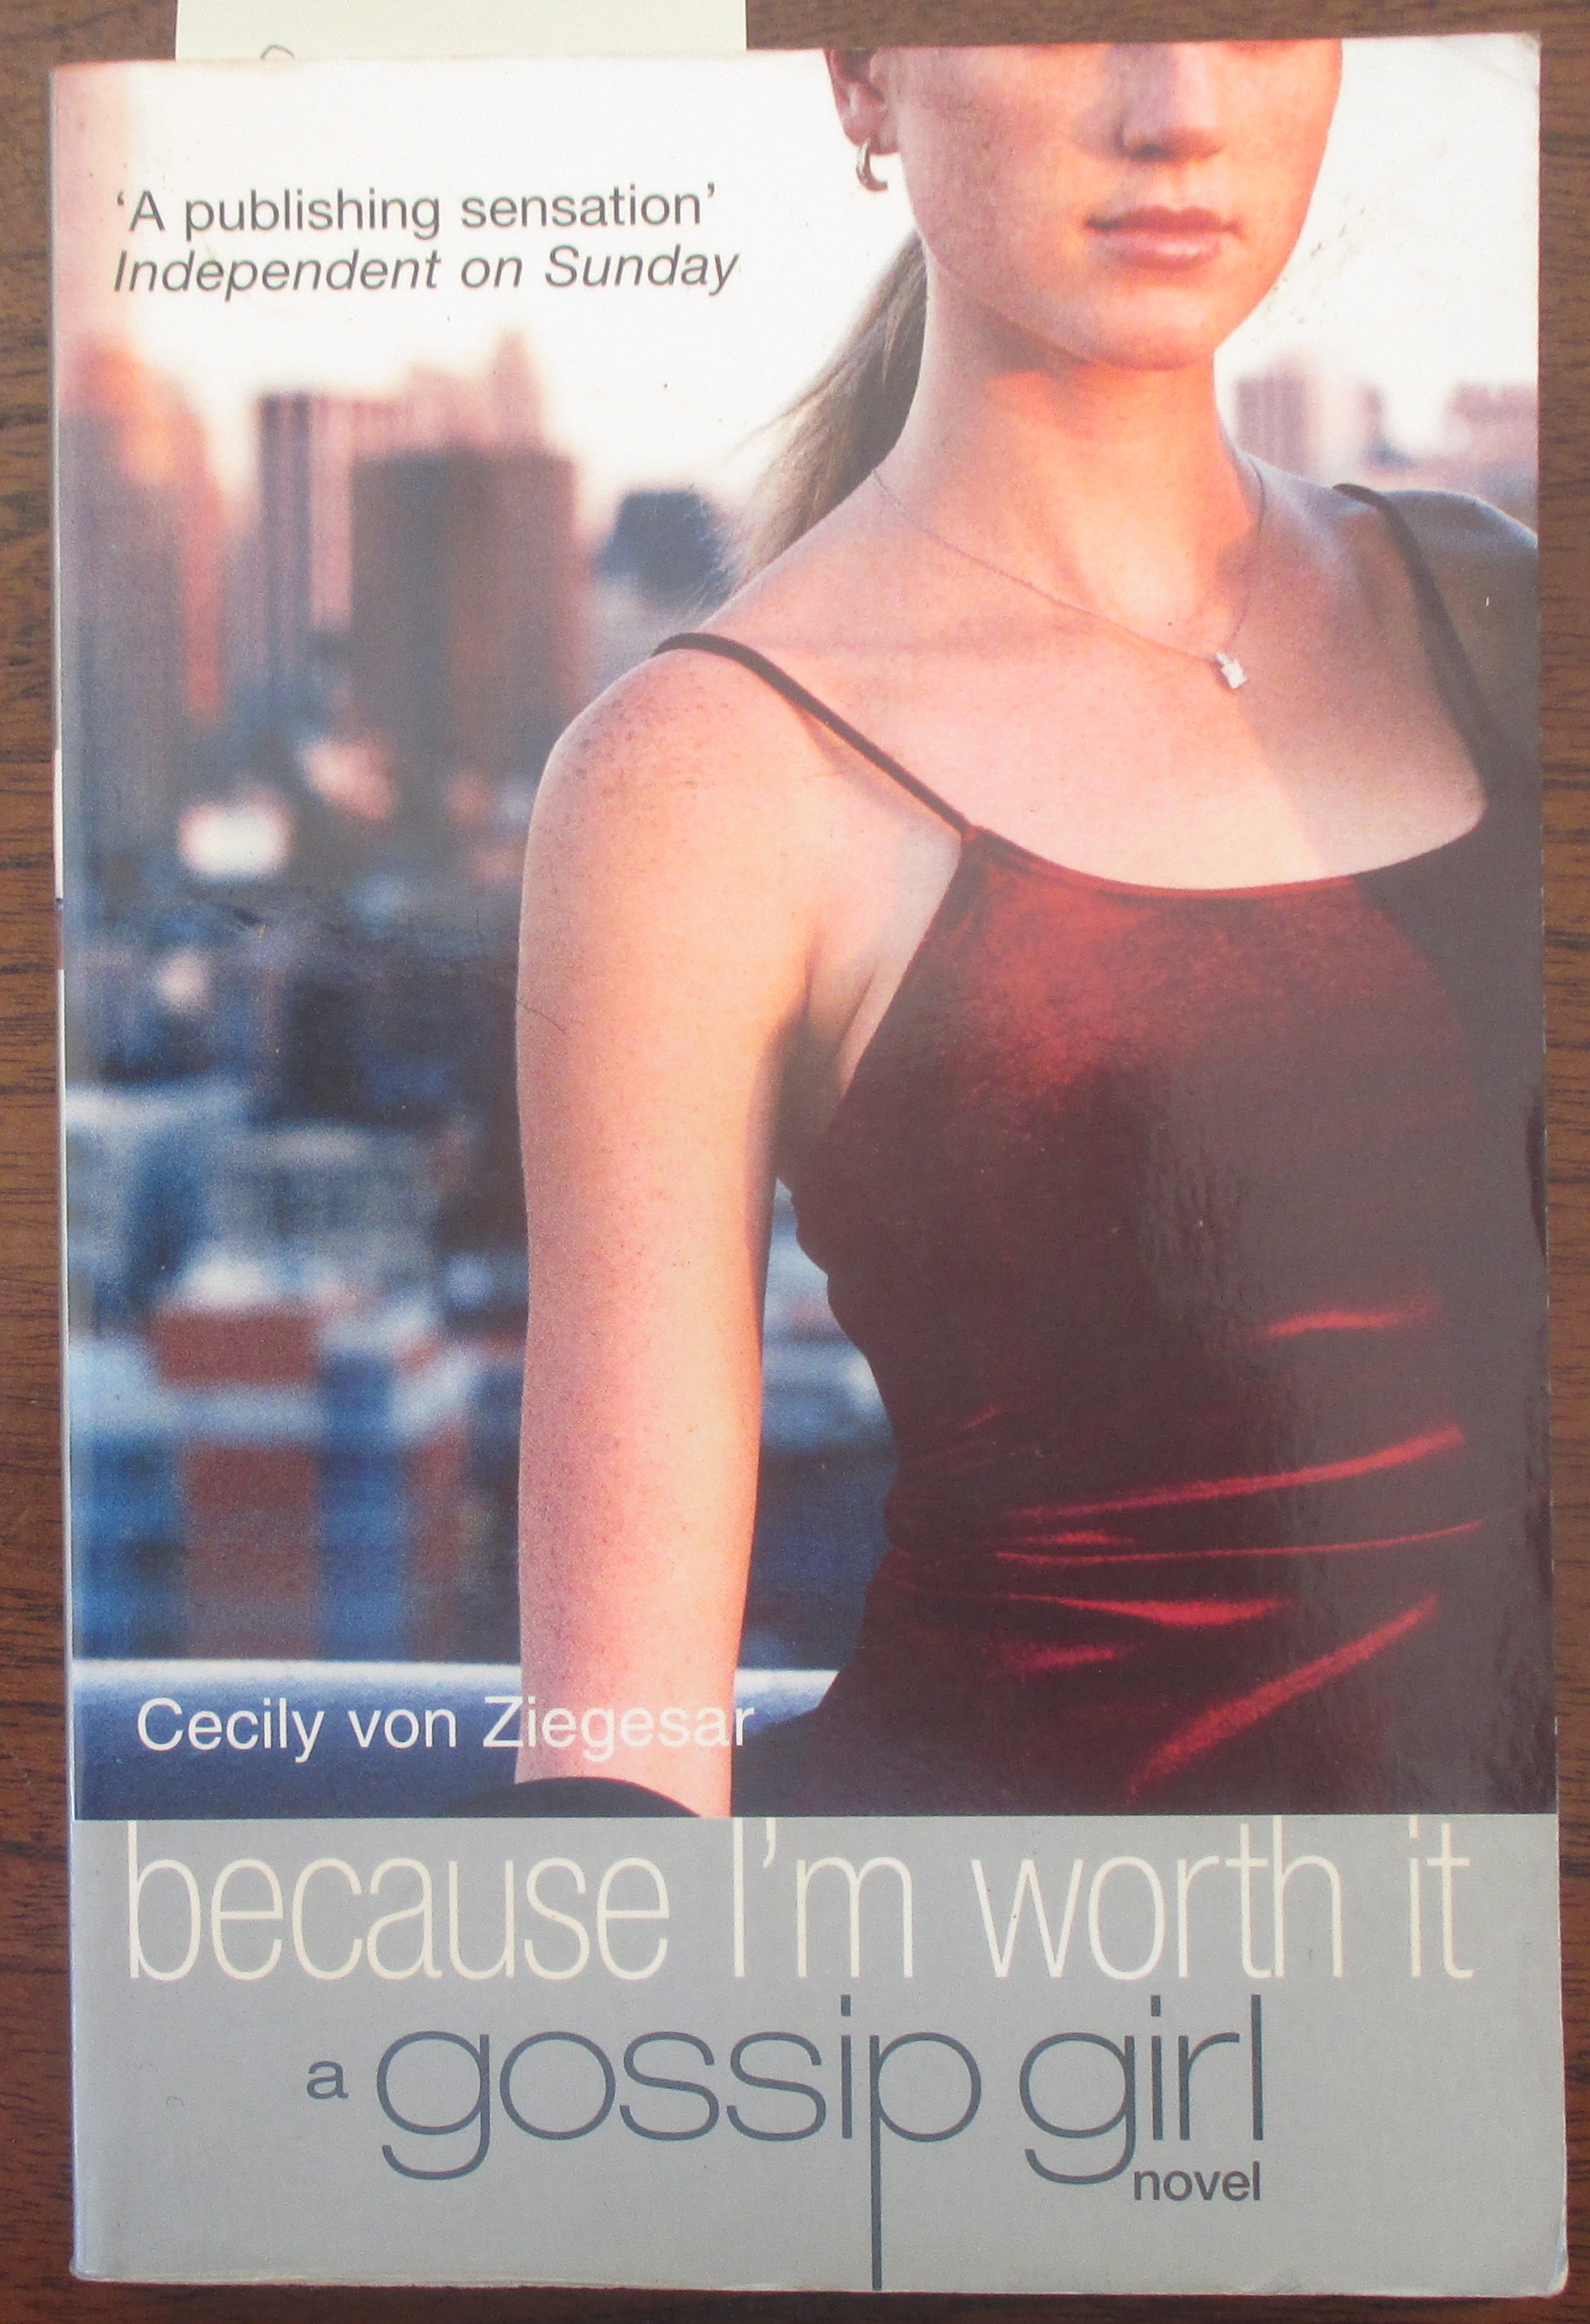 Because I'm Worth It (Gossip Girl, #4) by Cecily von Ziegesar